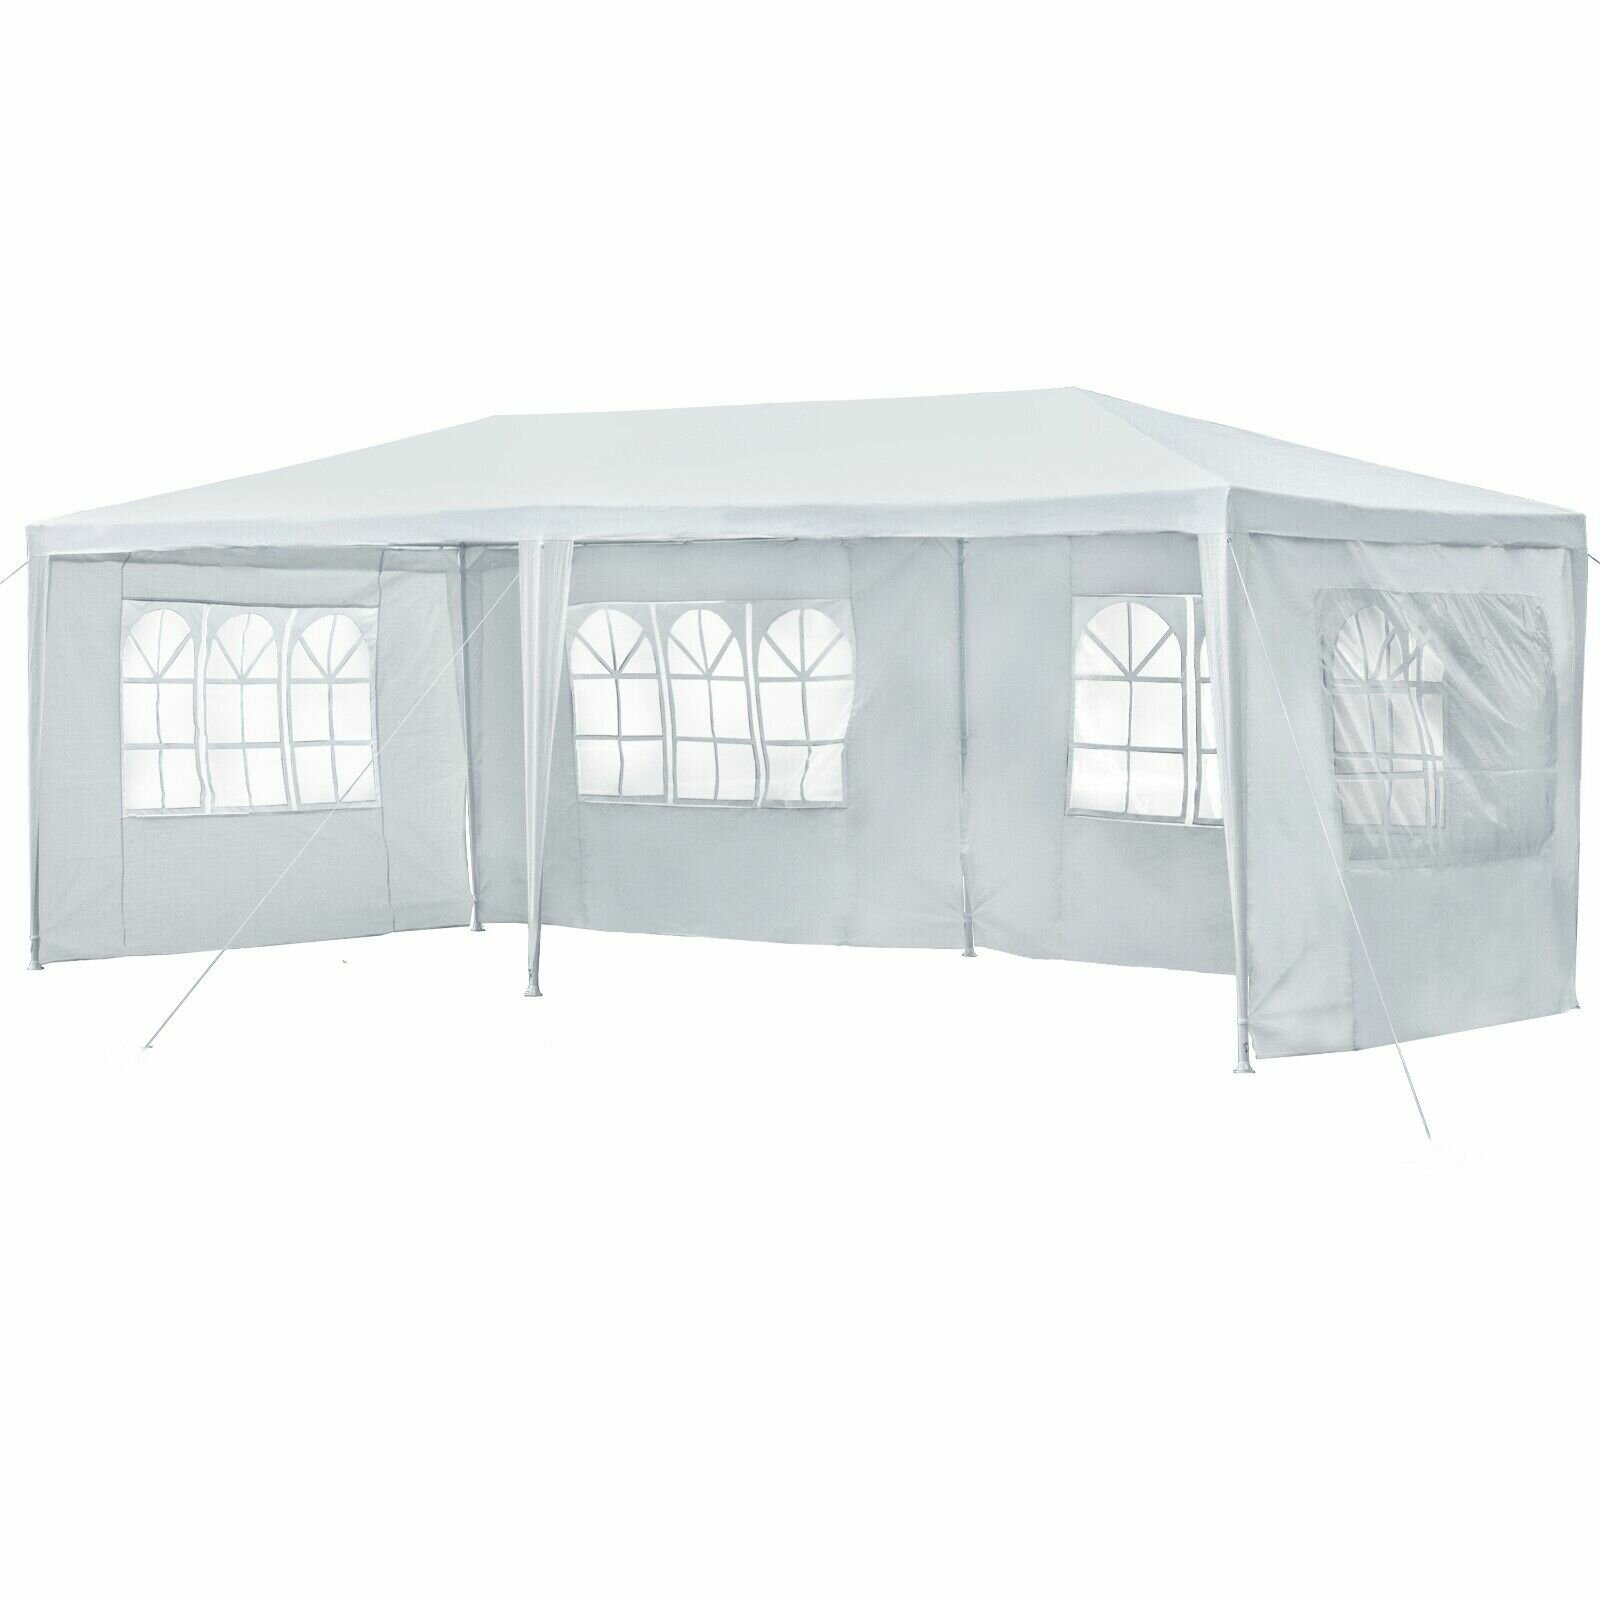 Paroi latérale de tente de 10x20 pieds, imperméable avec fenêtres, pour abri extérieur facile sans toit de tente de fête.